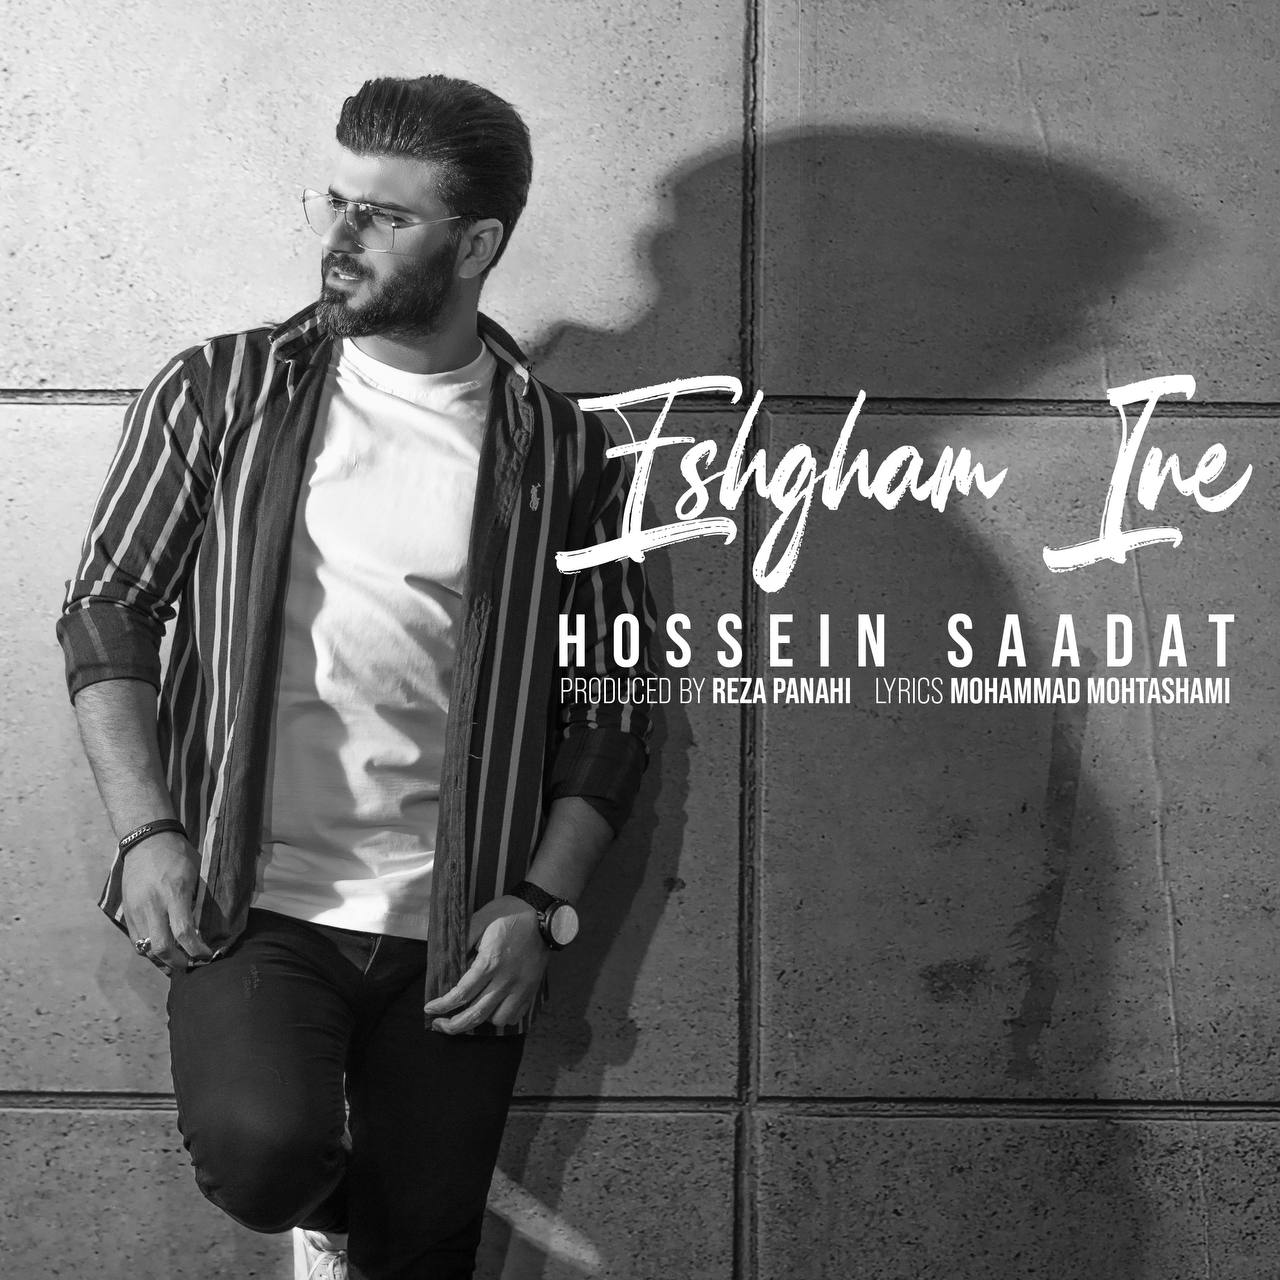 Hossein Saadat – Eshgham Ine